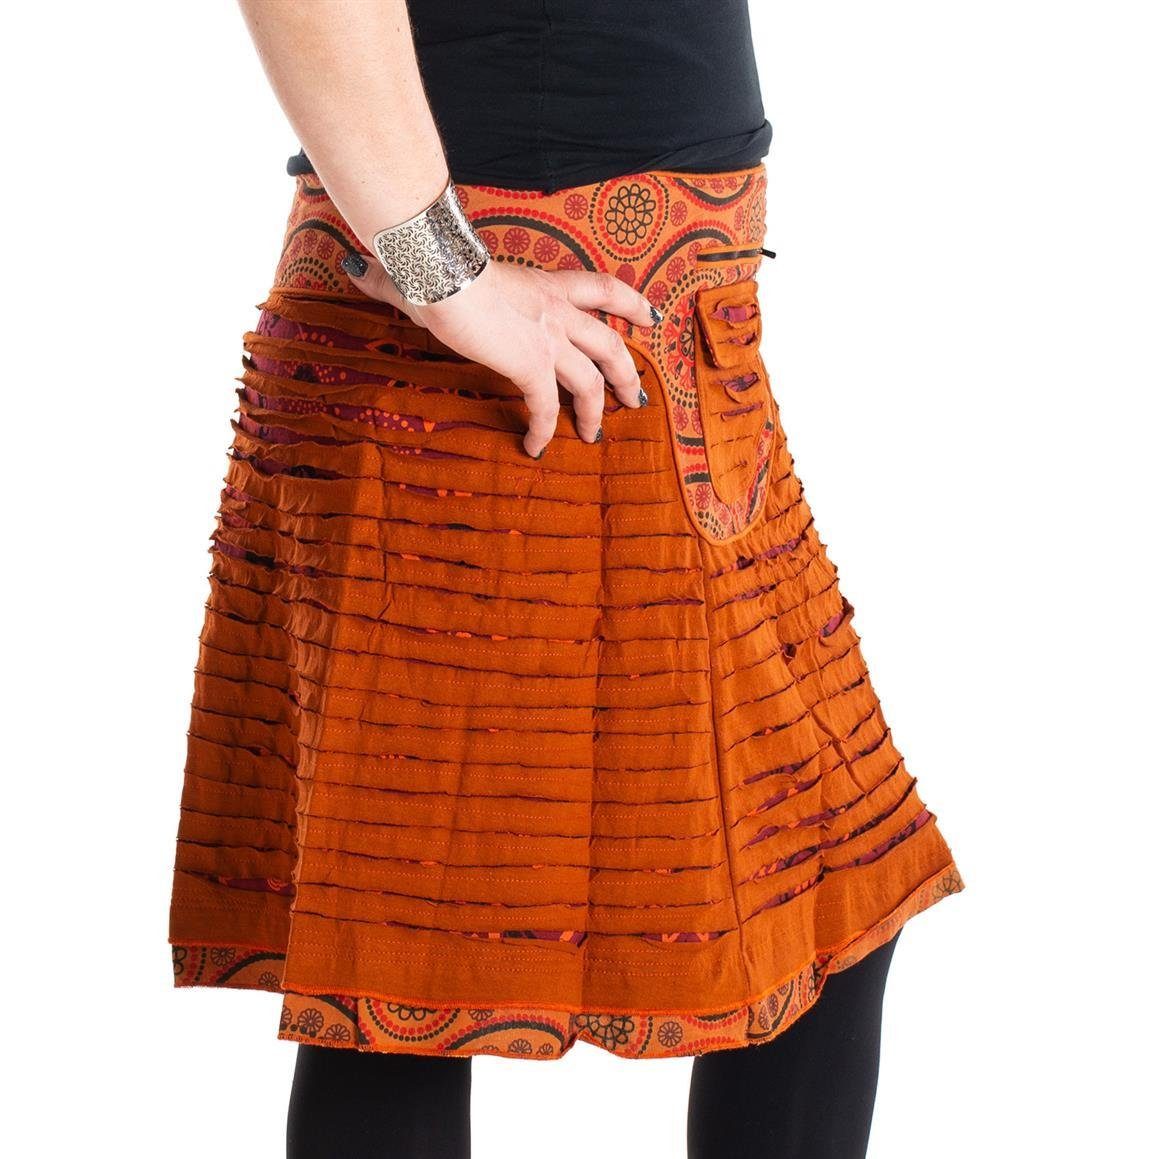 Elfen, Cutwork Wickelrock dunkelrot-orange Goa, Druckknöpfe Blumen Mandala Sidebag Hippie, Style Rock Ethno Vishes